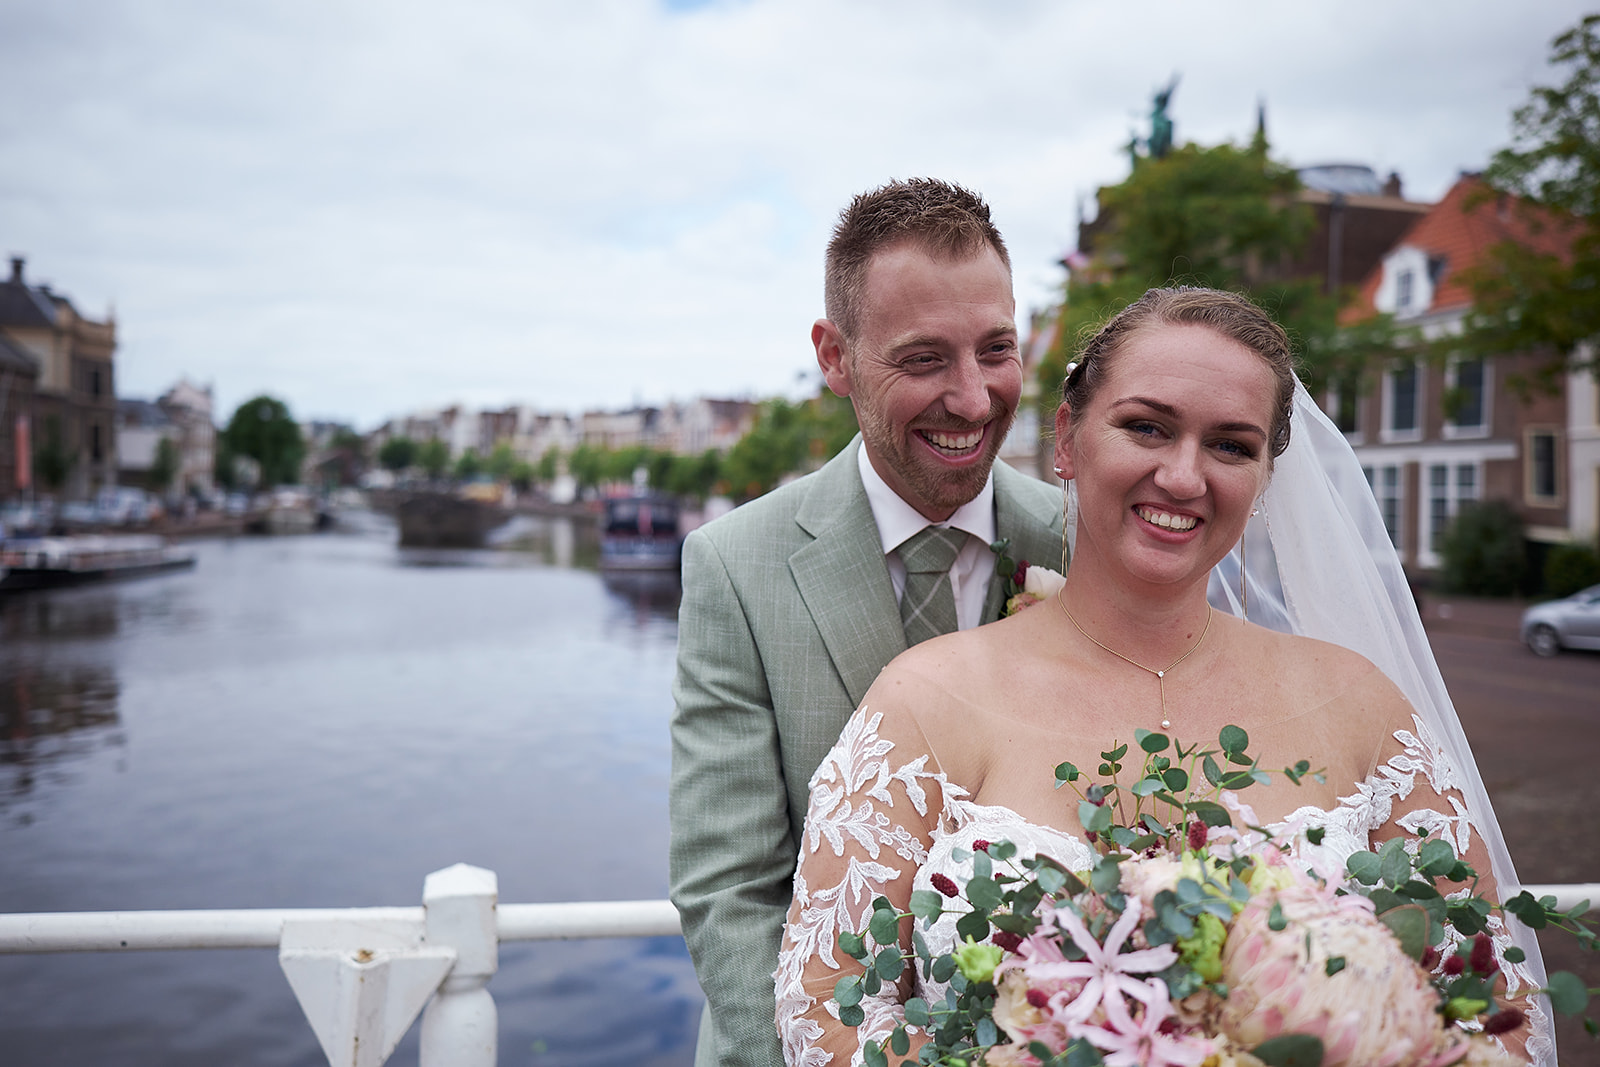 Romantische bruidsfotografie in Haarlem: Trouwshoot van Liëla en Jeffrey, vastgelegd door Stefan Segers